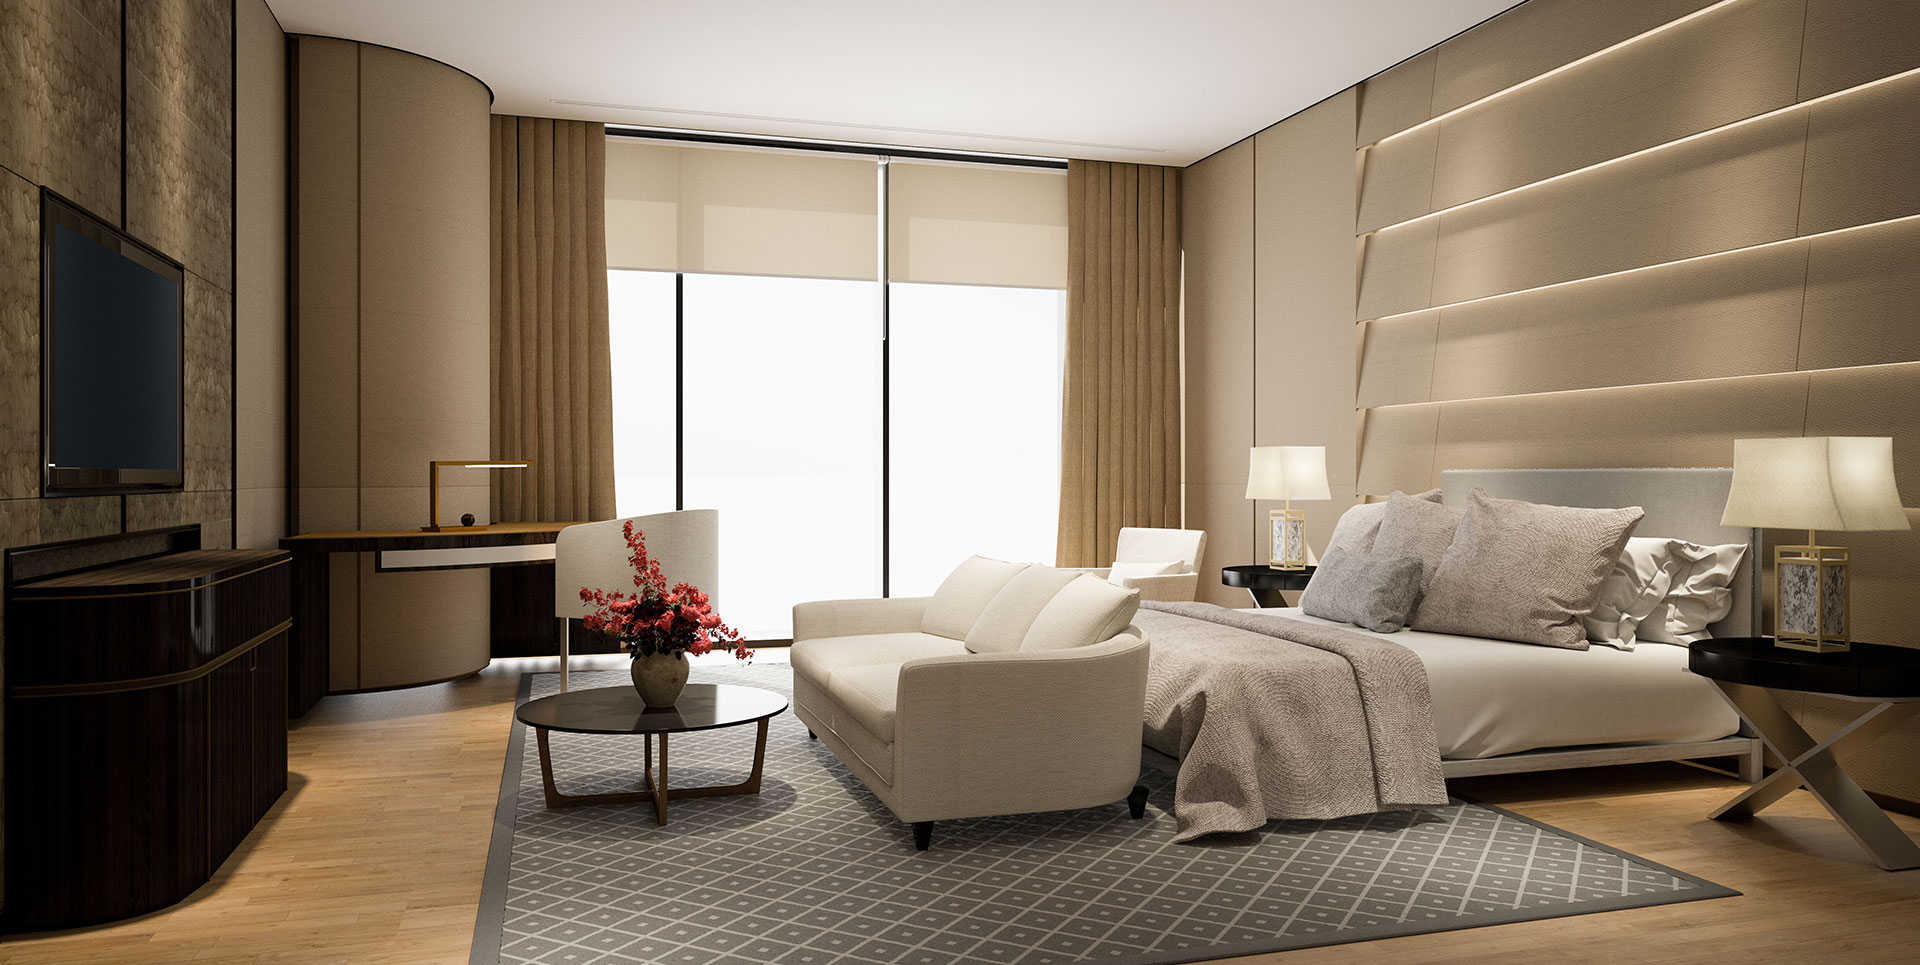 New trends in Bedroom interior Design